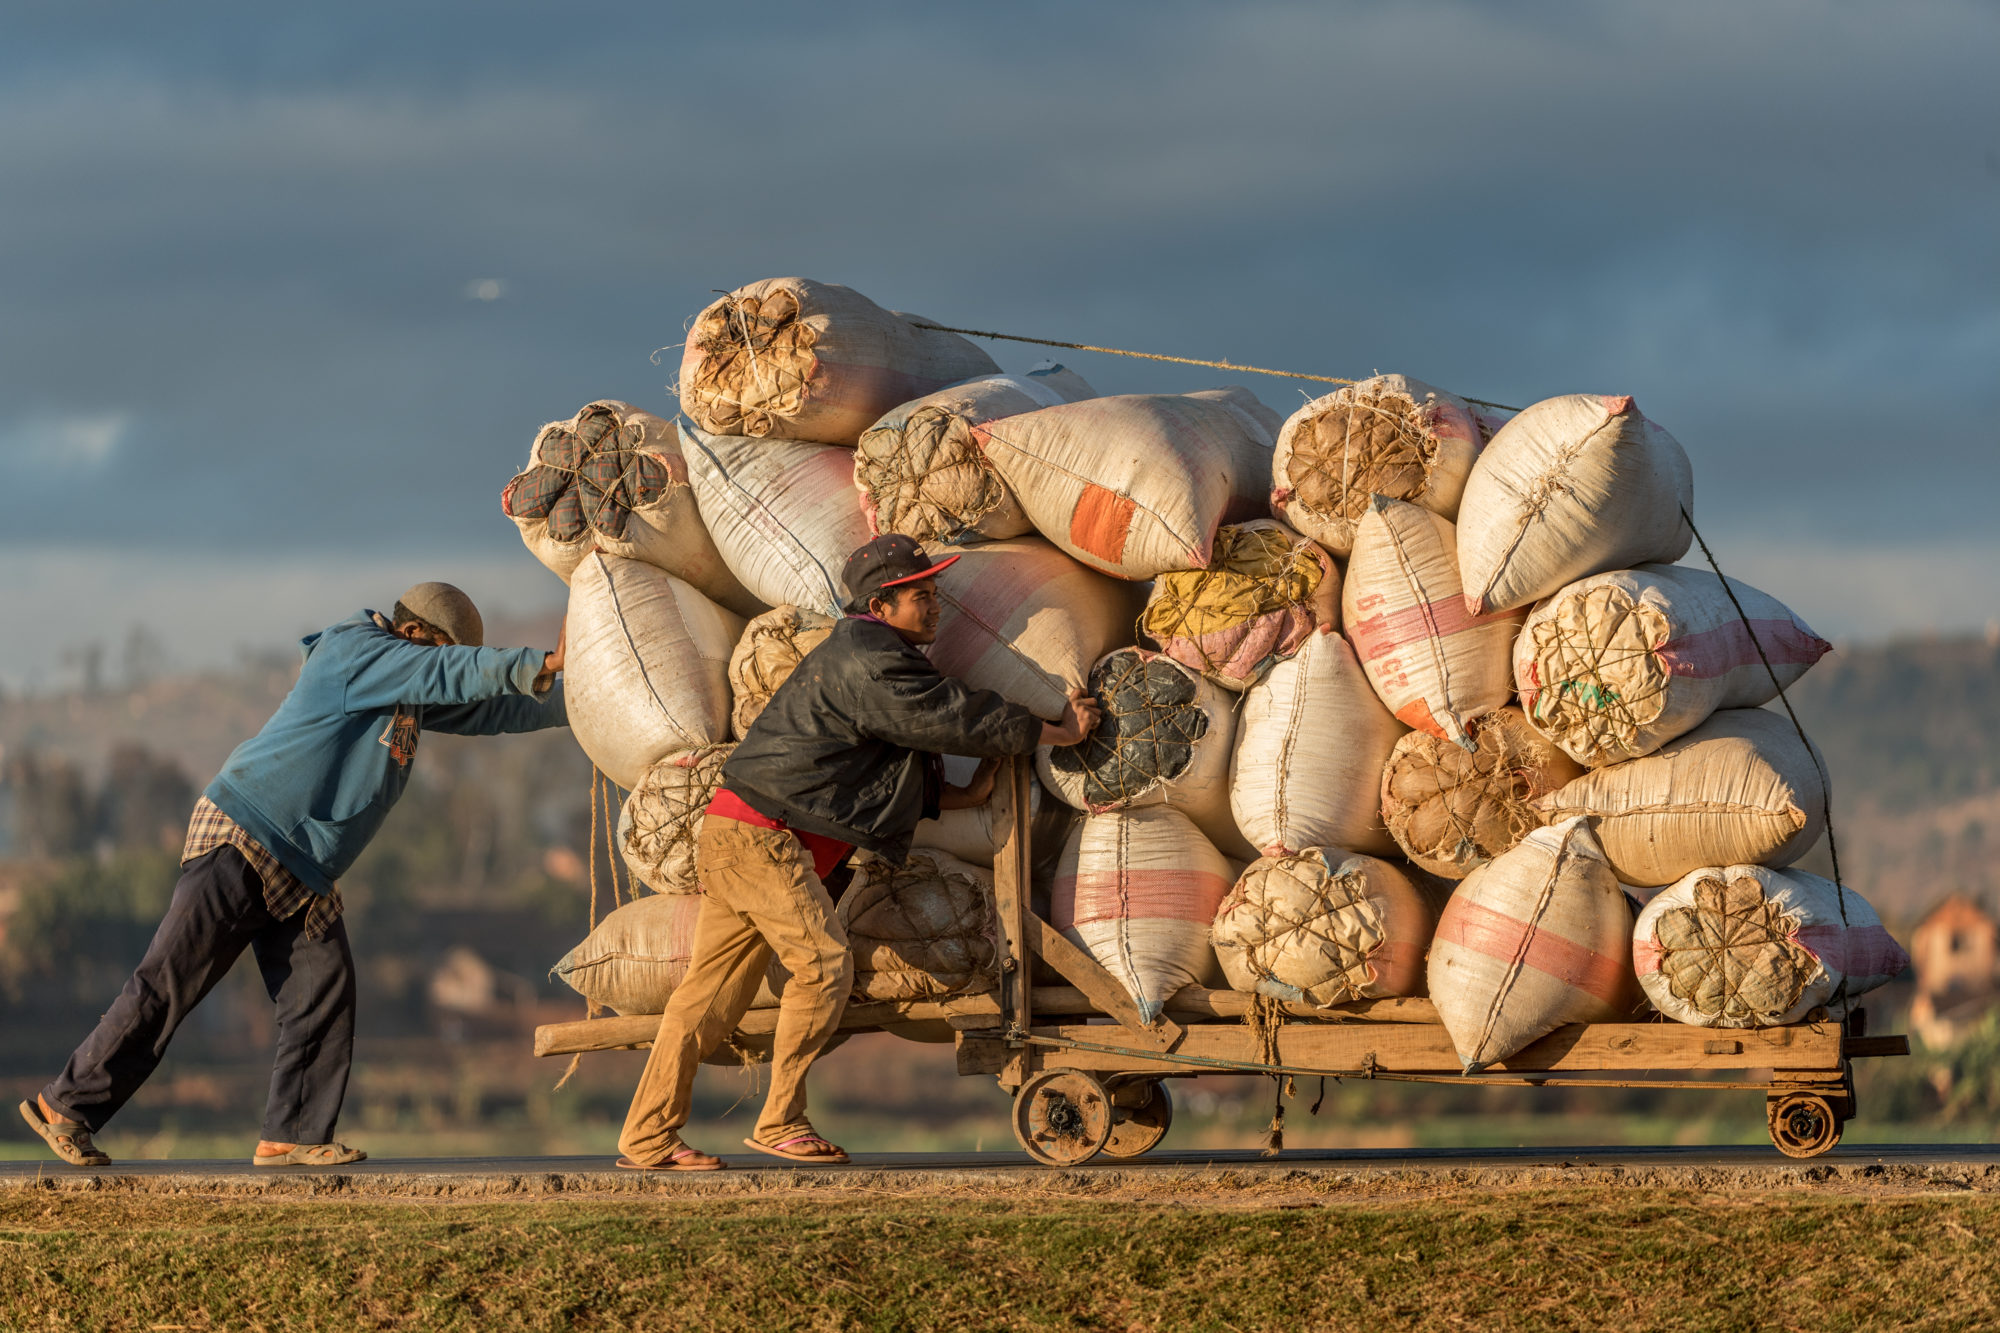 Foto di due uomini trascinano un carretto carico di merci